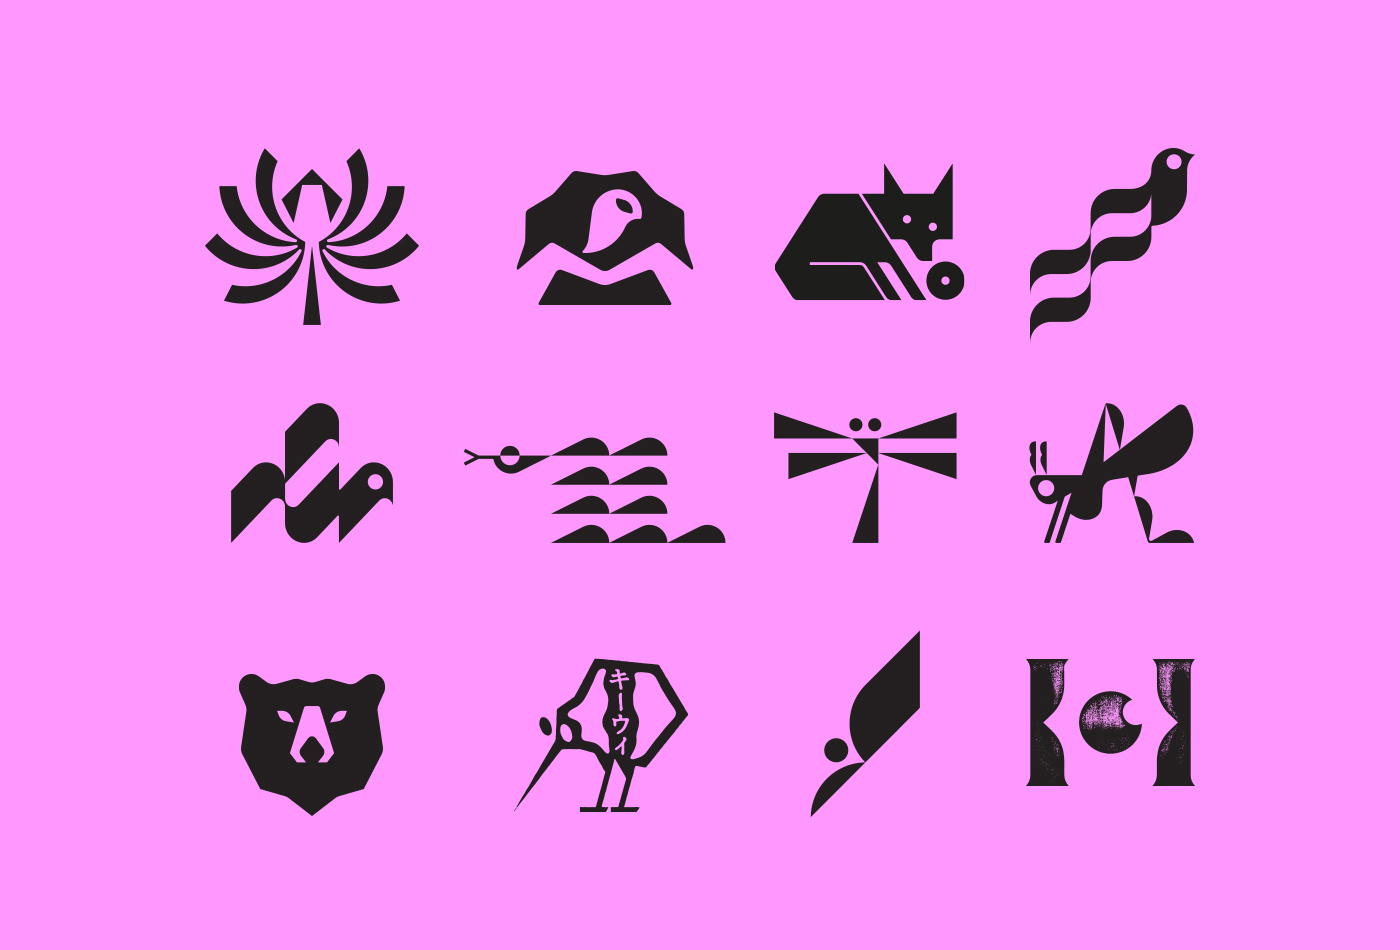 E-logo-glyphs-symbol-logos-pictogram-marks-trademarks-trademark-glyph-icon-icons-logotype-collection-vacaliebres-corporate-identity-vaca-playstation-logo-fox-kiwi